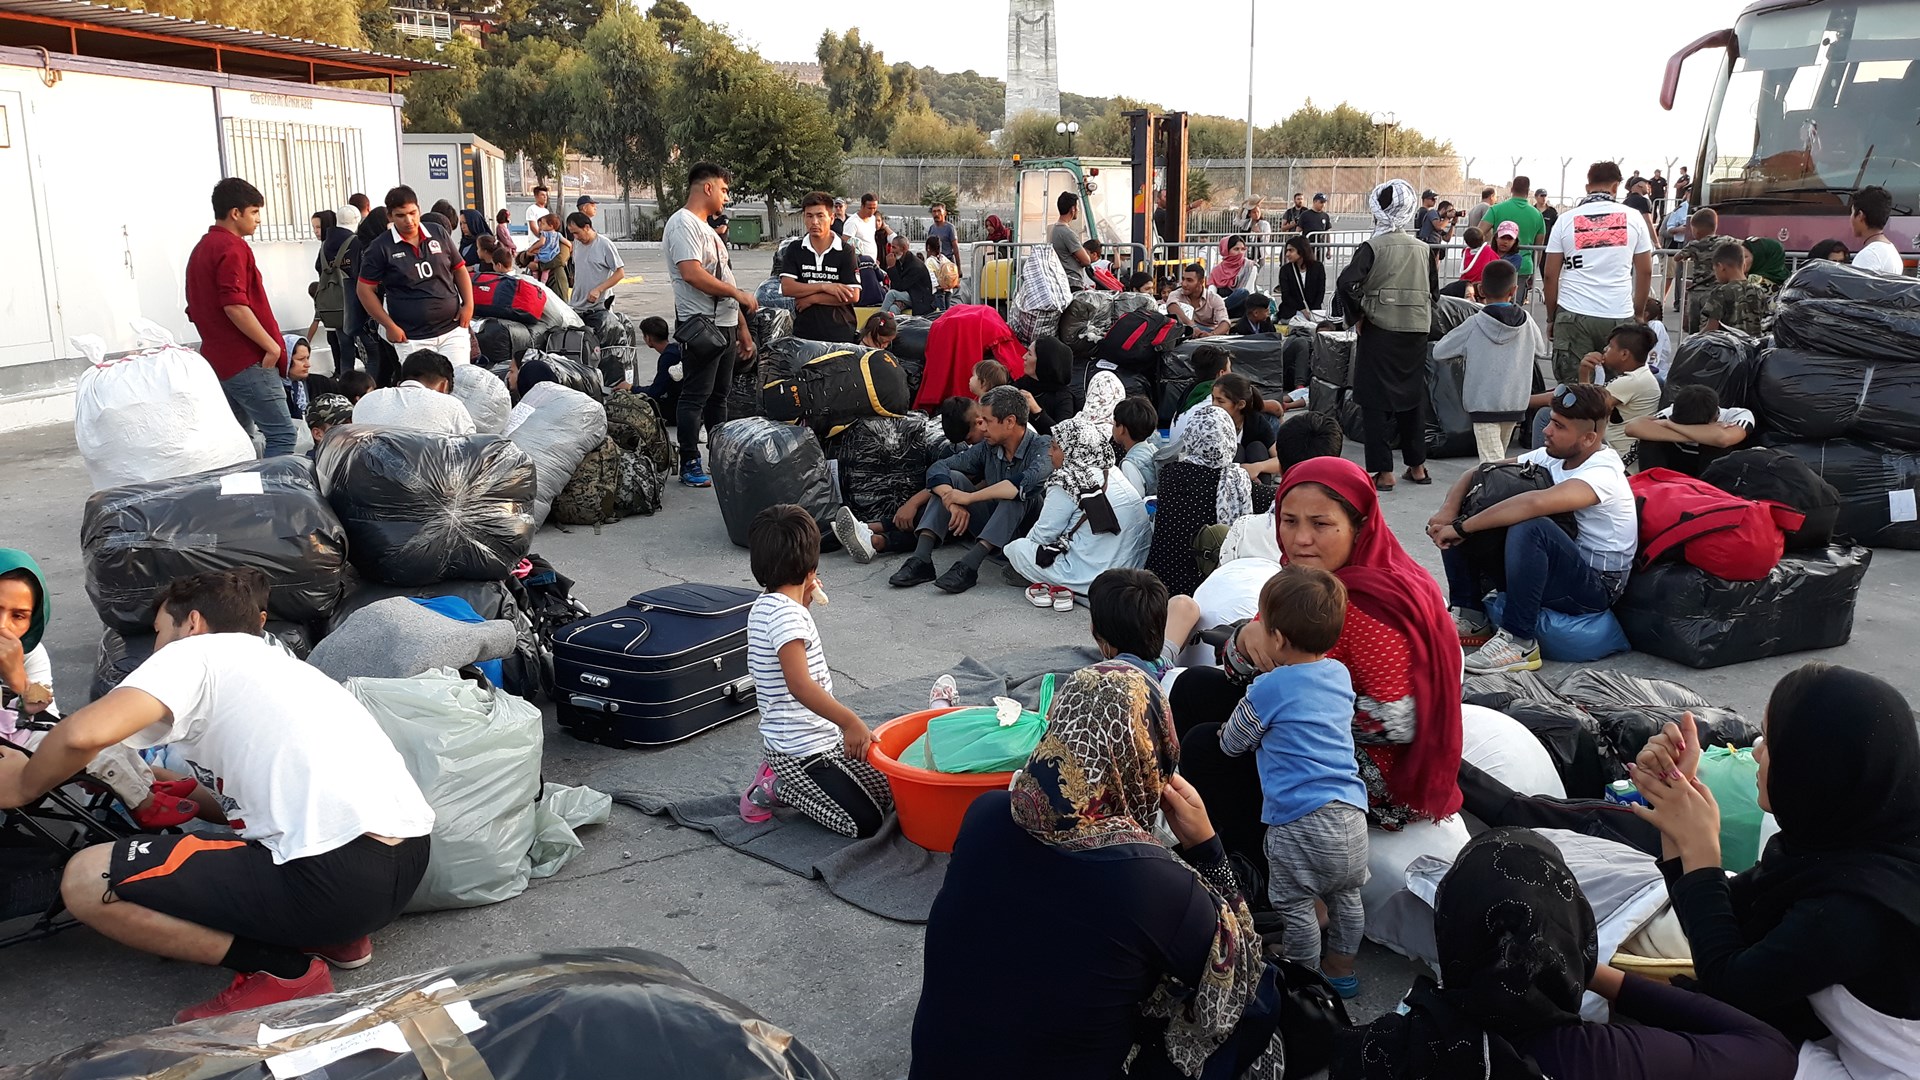 Σε εξέλιξη η επιχείρηση μετακίνησης 1.500 προσφύγων και μεταναστών από τη Λέσβο